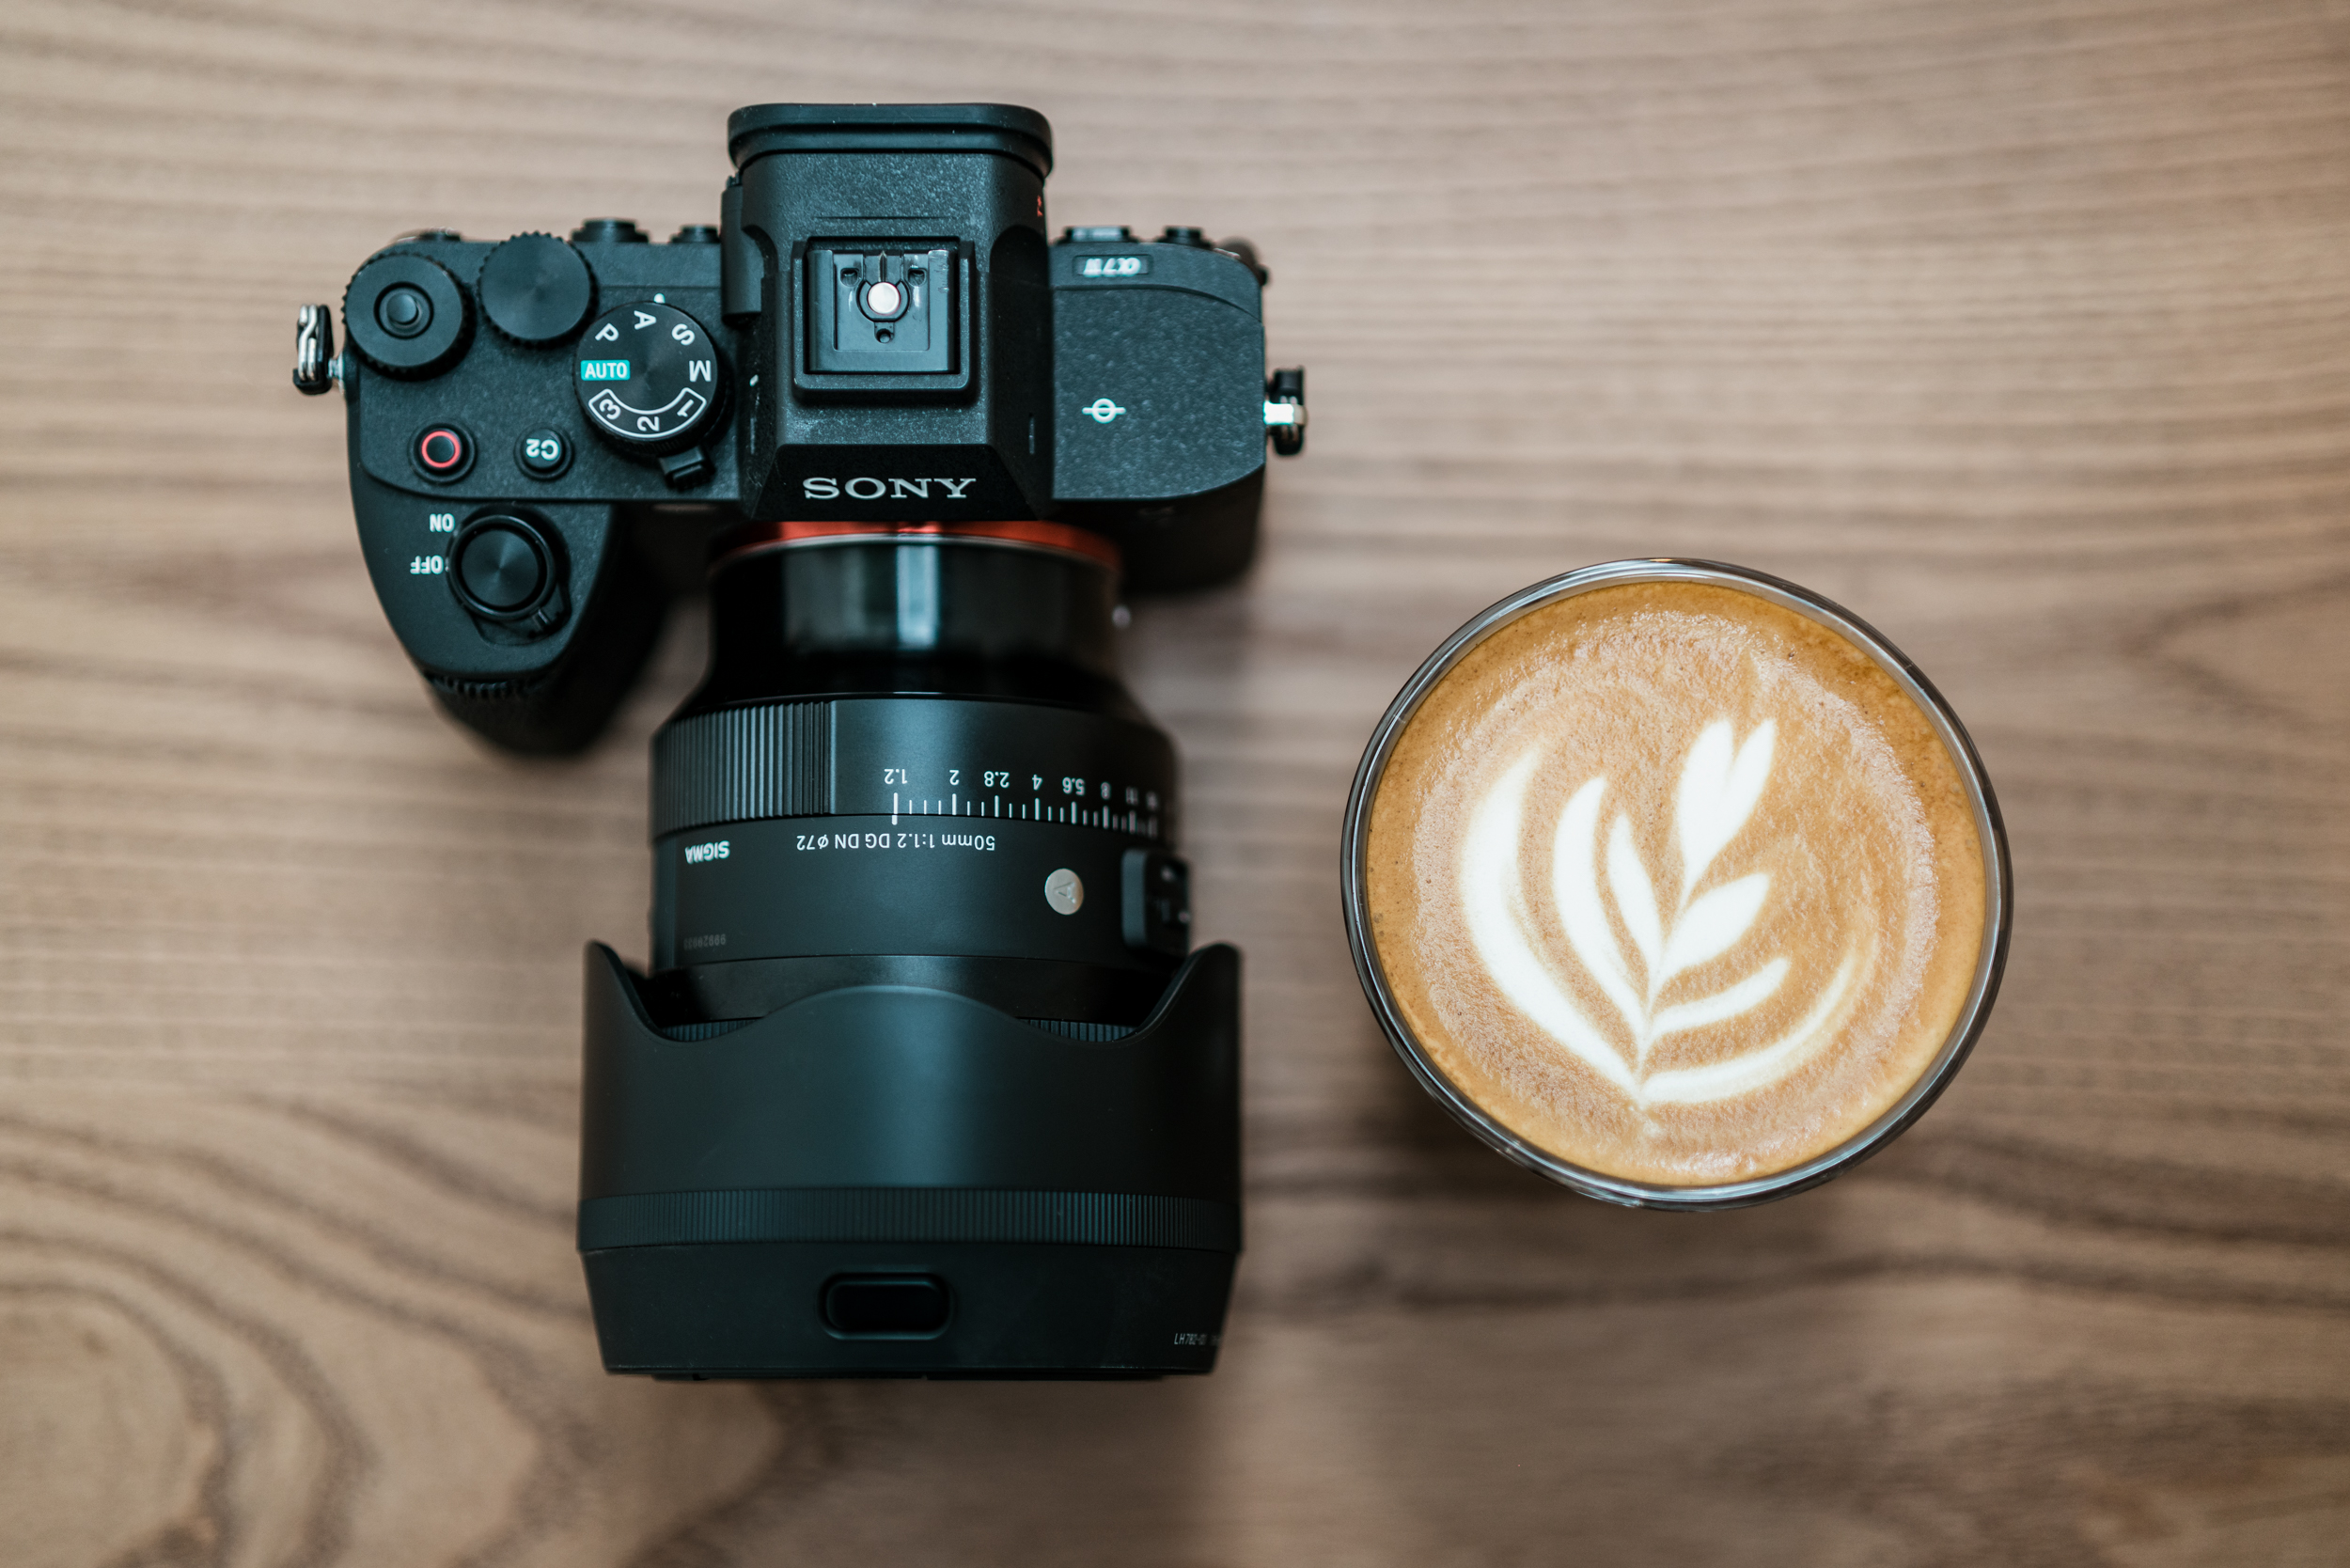 obiektyw Sigma 50 mm f/1.2 zamocowany do aparatu, obok na stole znajduje się kawa